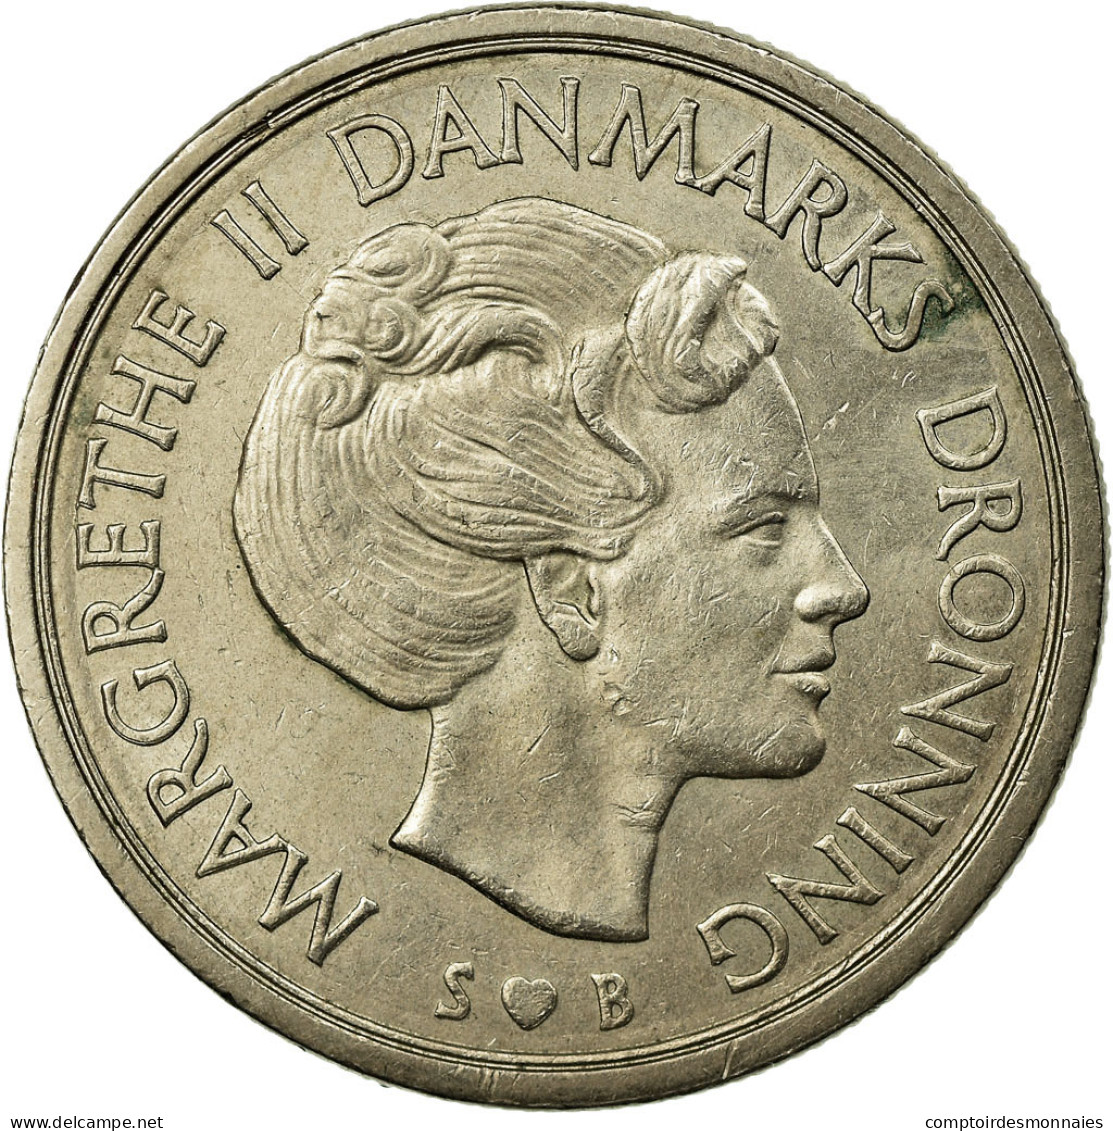 Monnaie, Danemark, Margrethe II, 5 Kroner, 1977, Copenhagen, TTB, Copper-nickel - Denmark